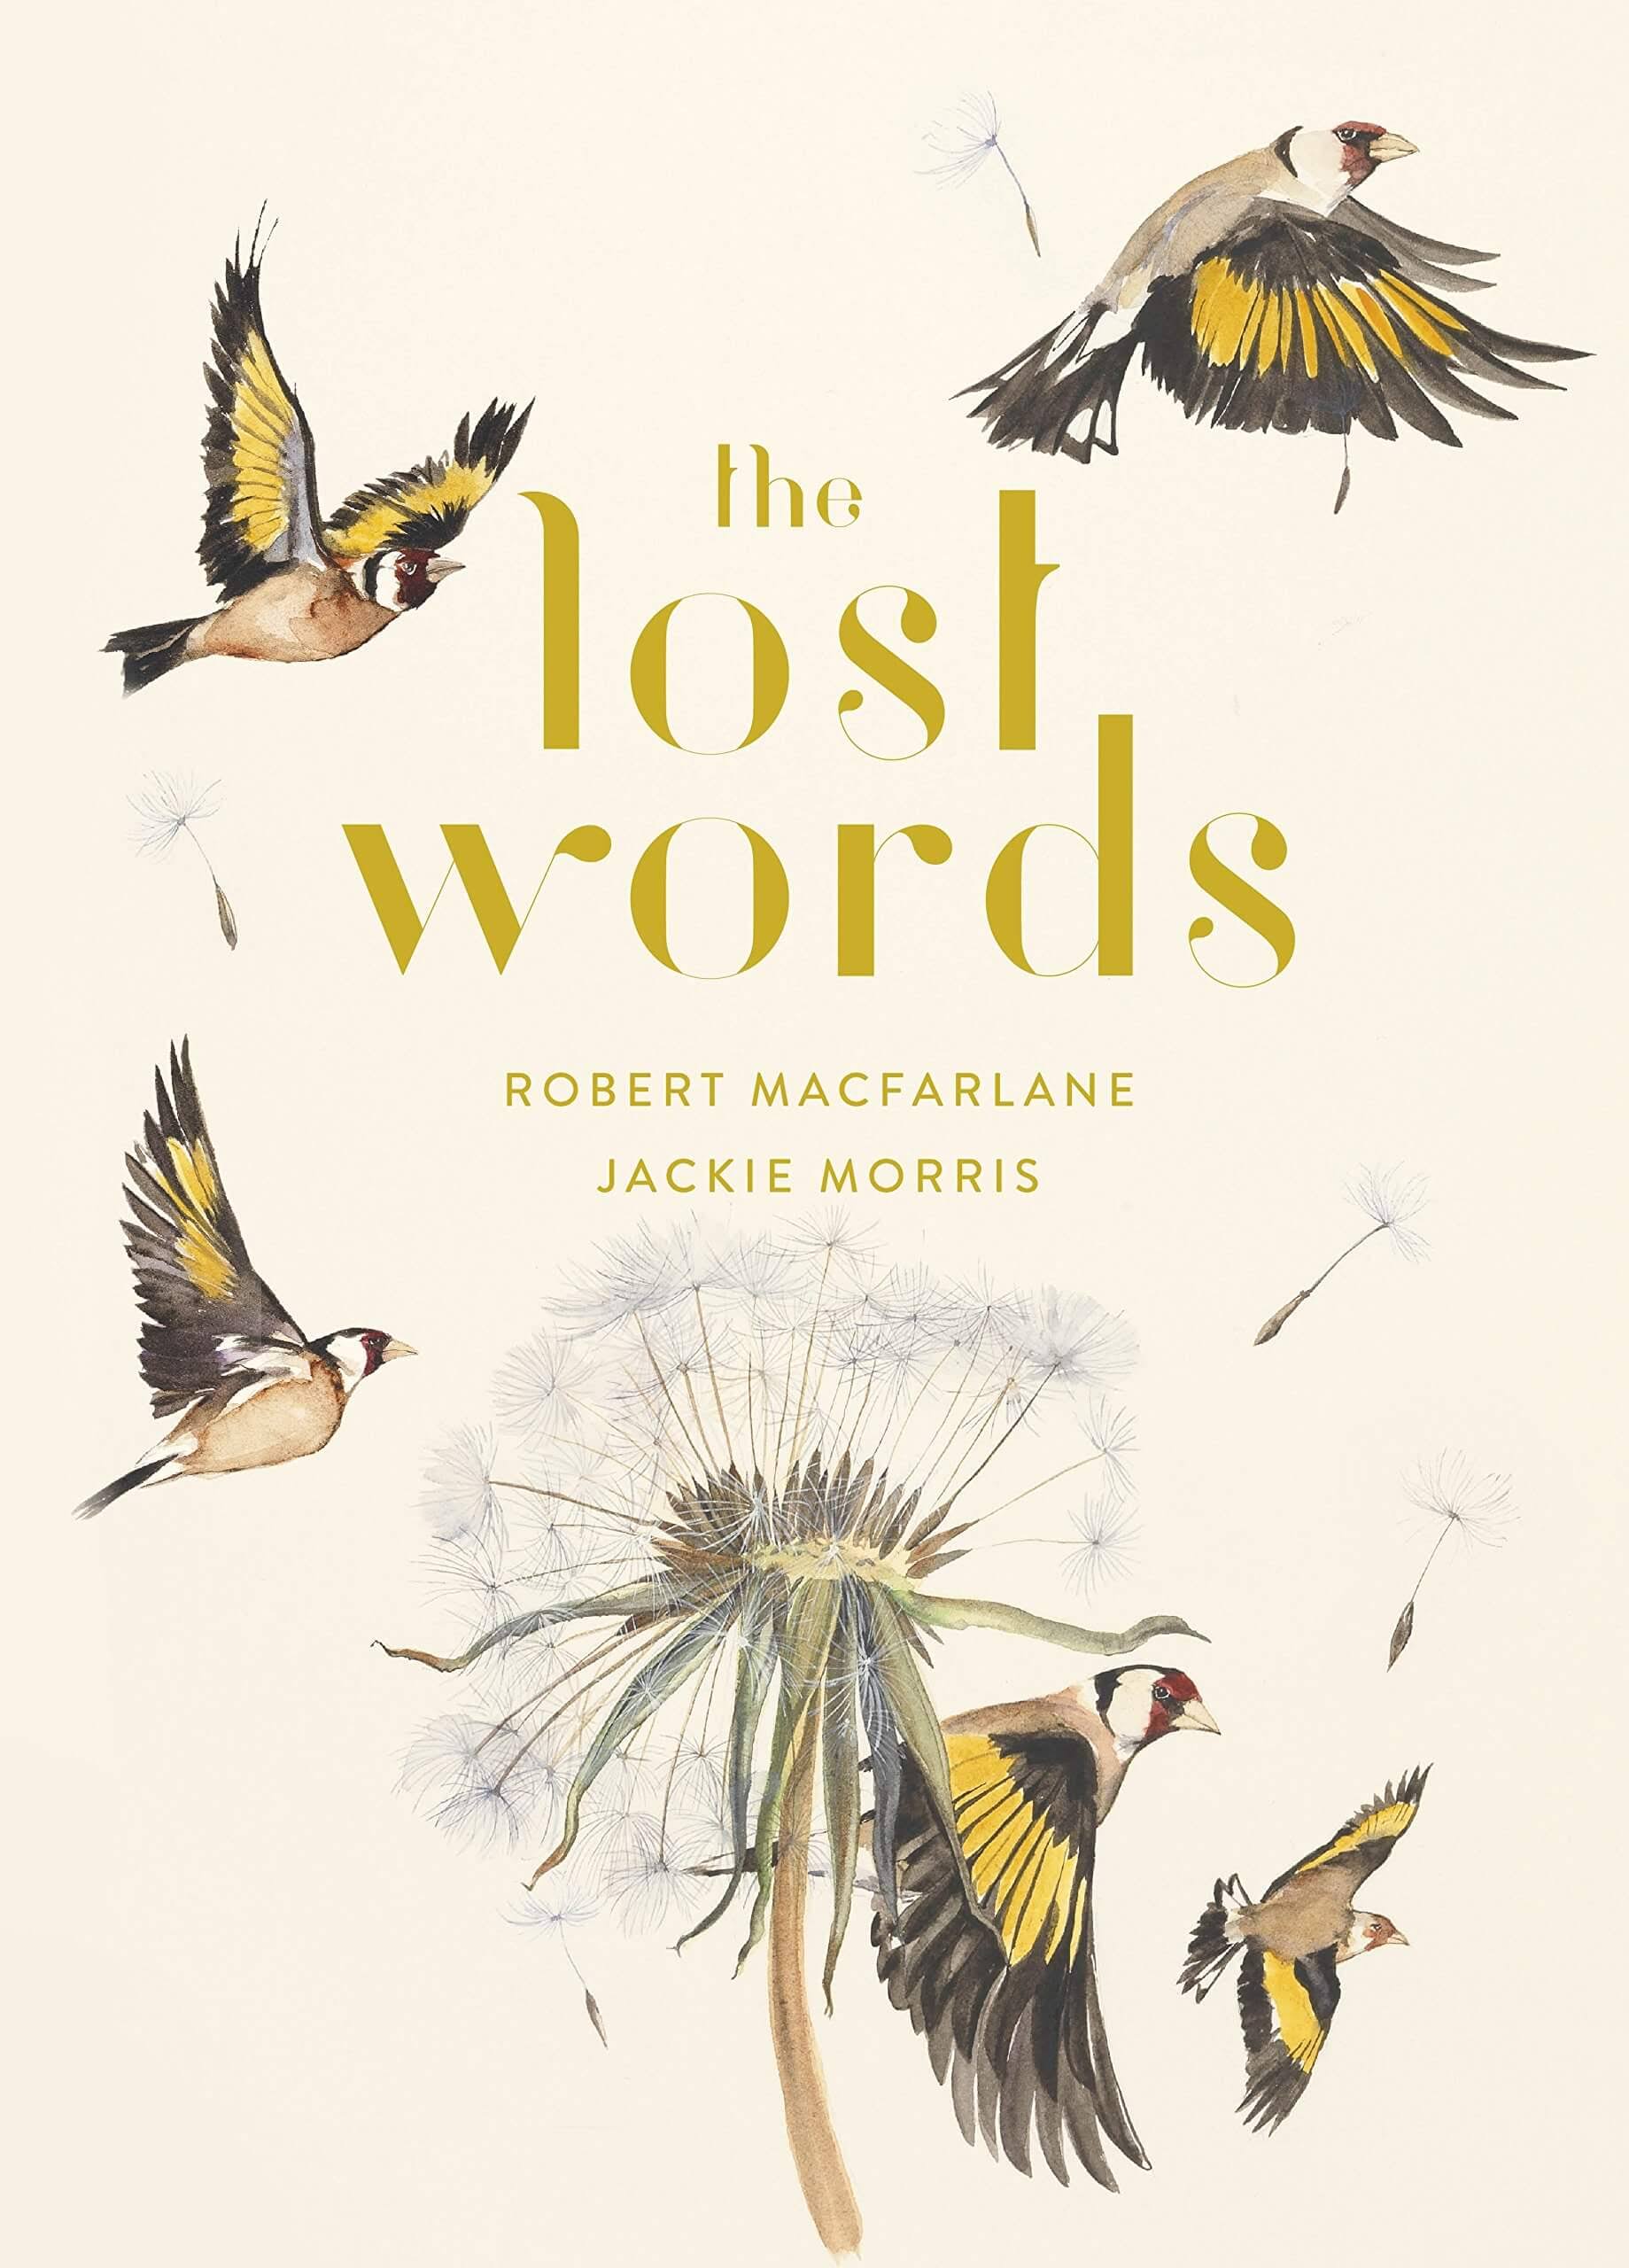 The Lost Words - Robert Macfarlane, Jackie Morris